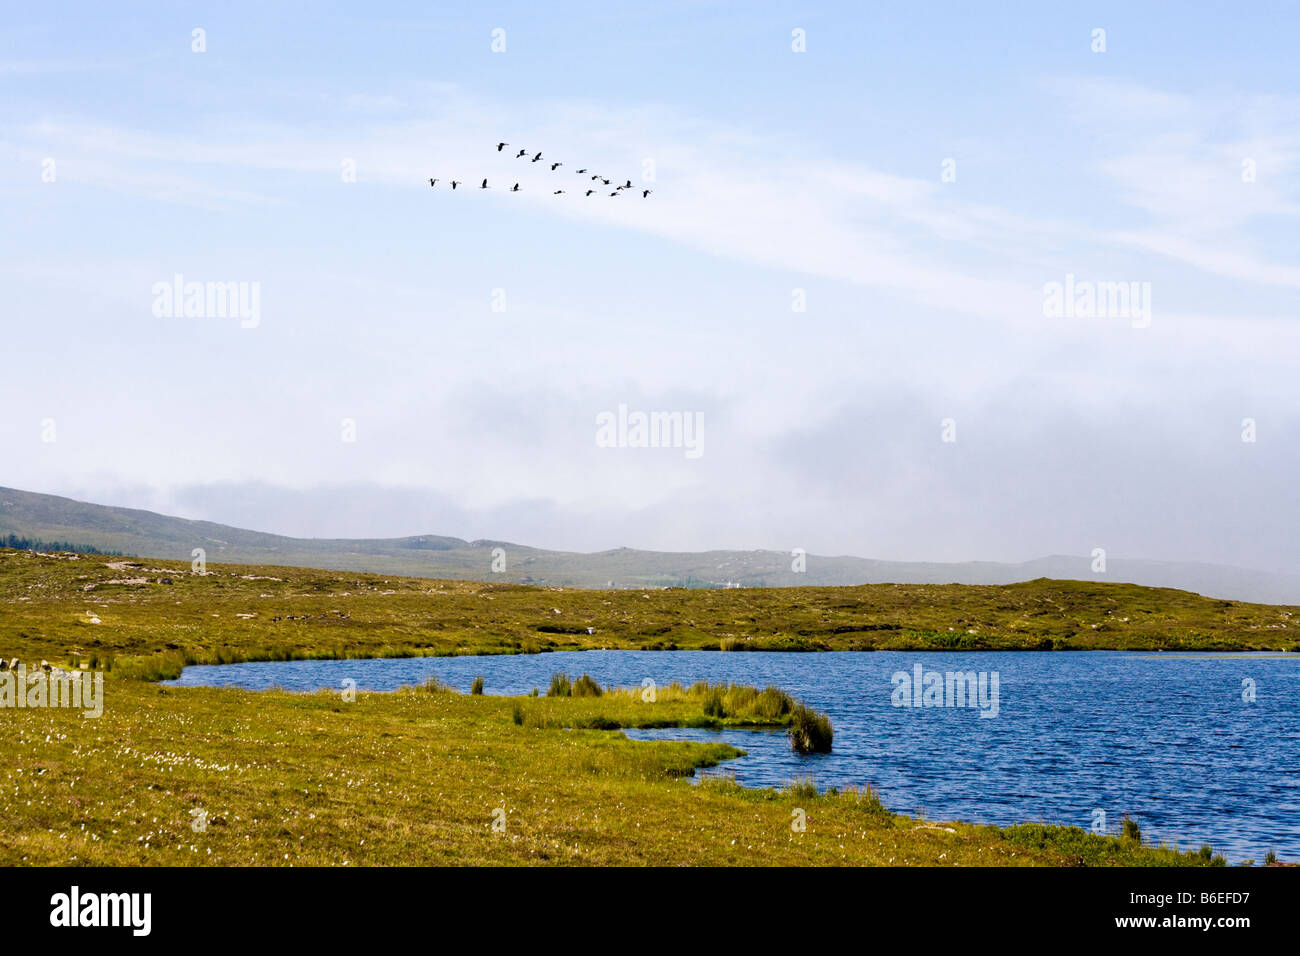 Gansos volando sobre loch Dubh na Maoil, Mellon Udrigle, Wester Ross, Highland, Escocia Foto de stock